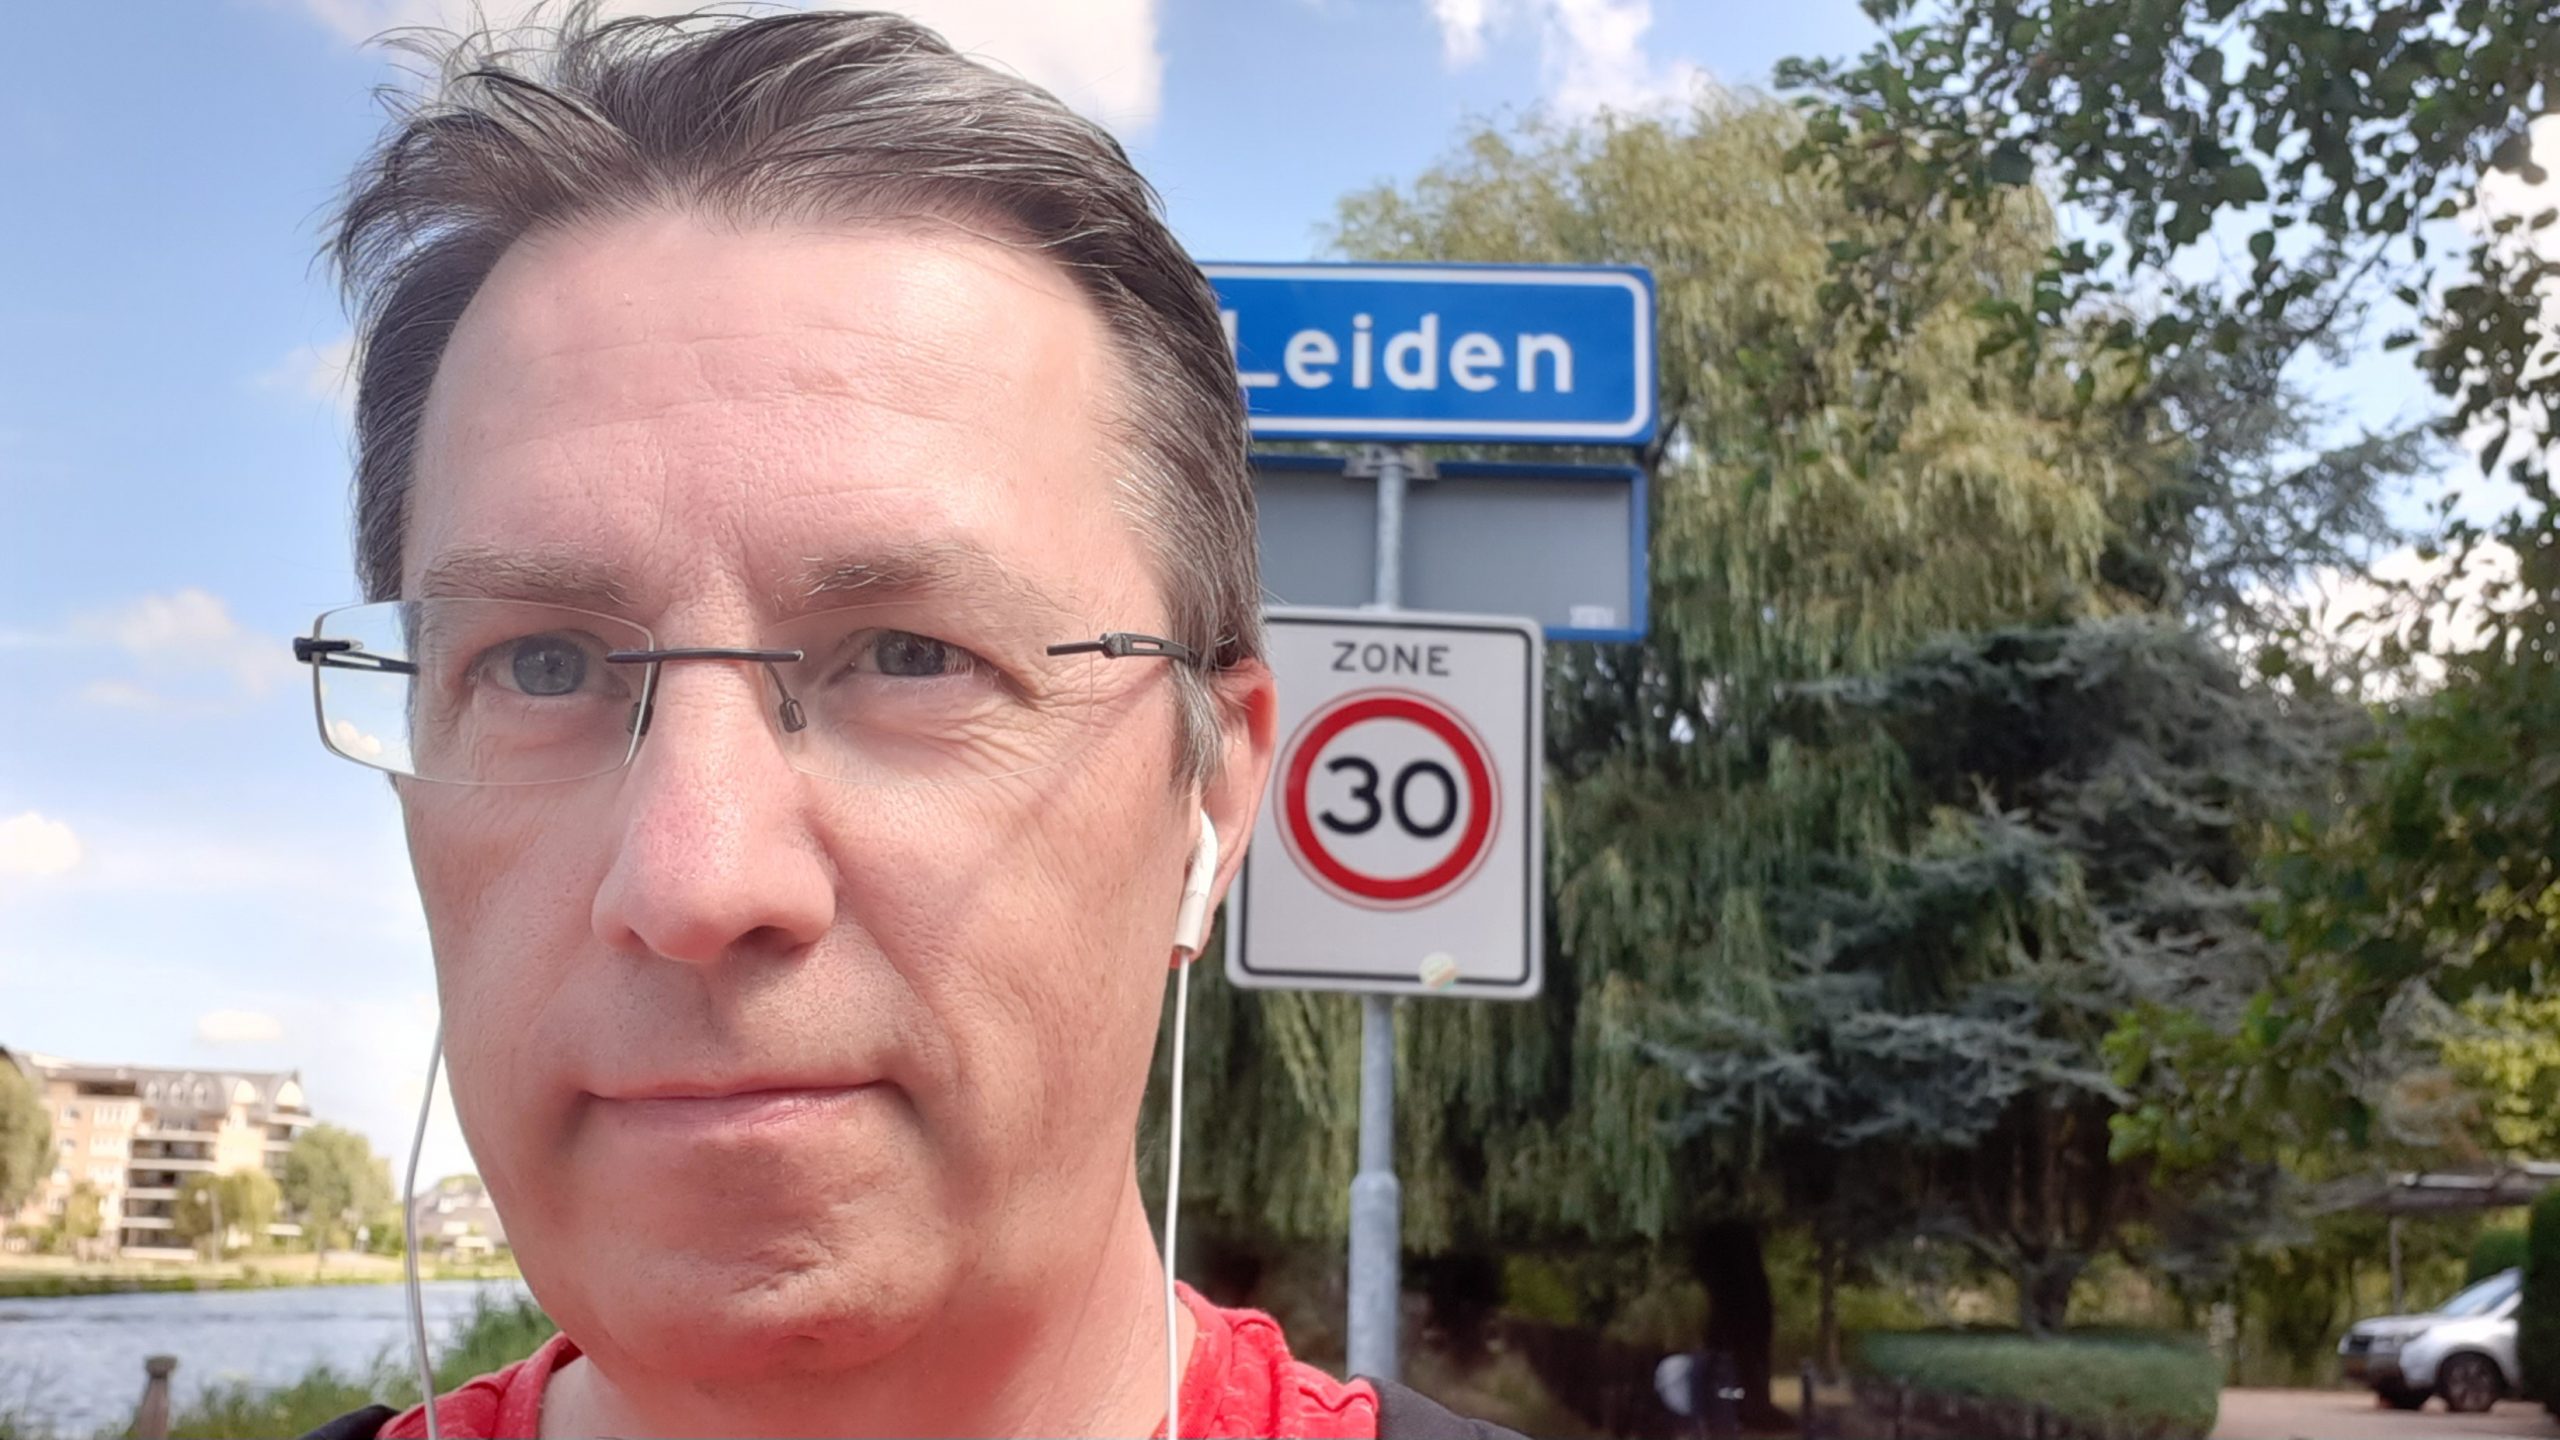 Marskramerpad Wassenaar – Leiden: Willem Frederik Hermans (22 km)